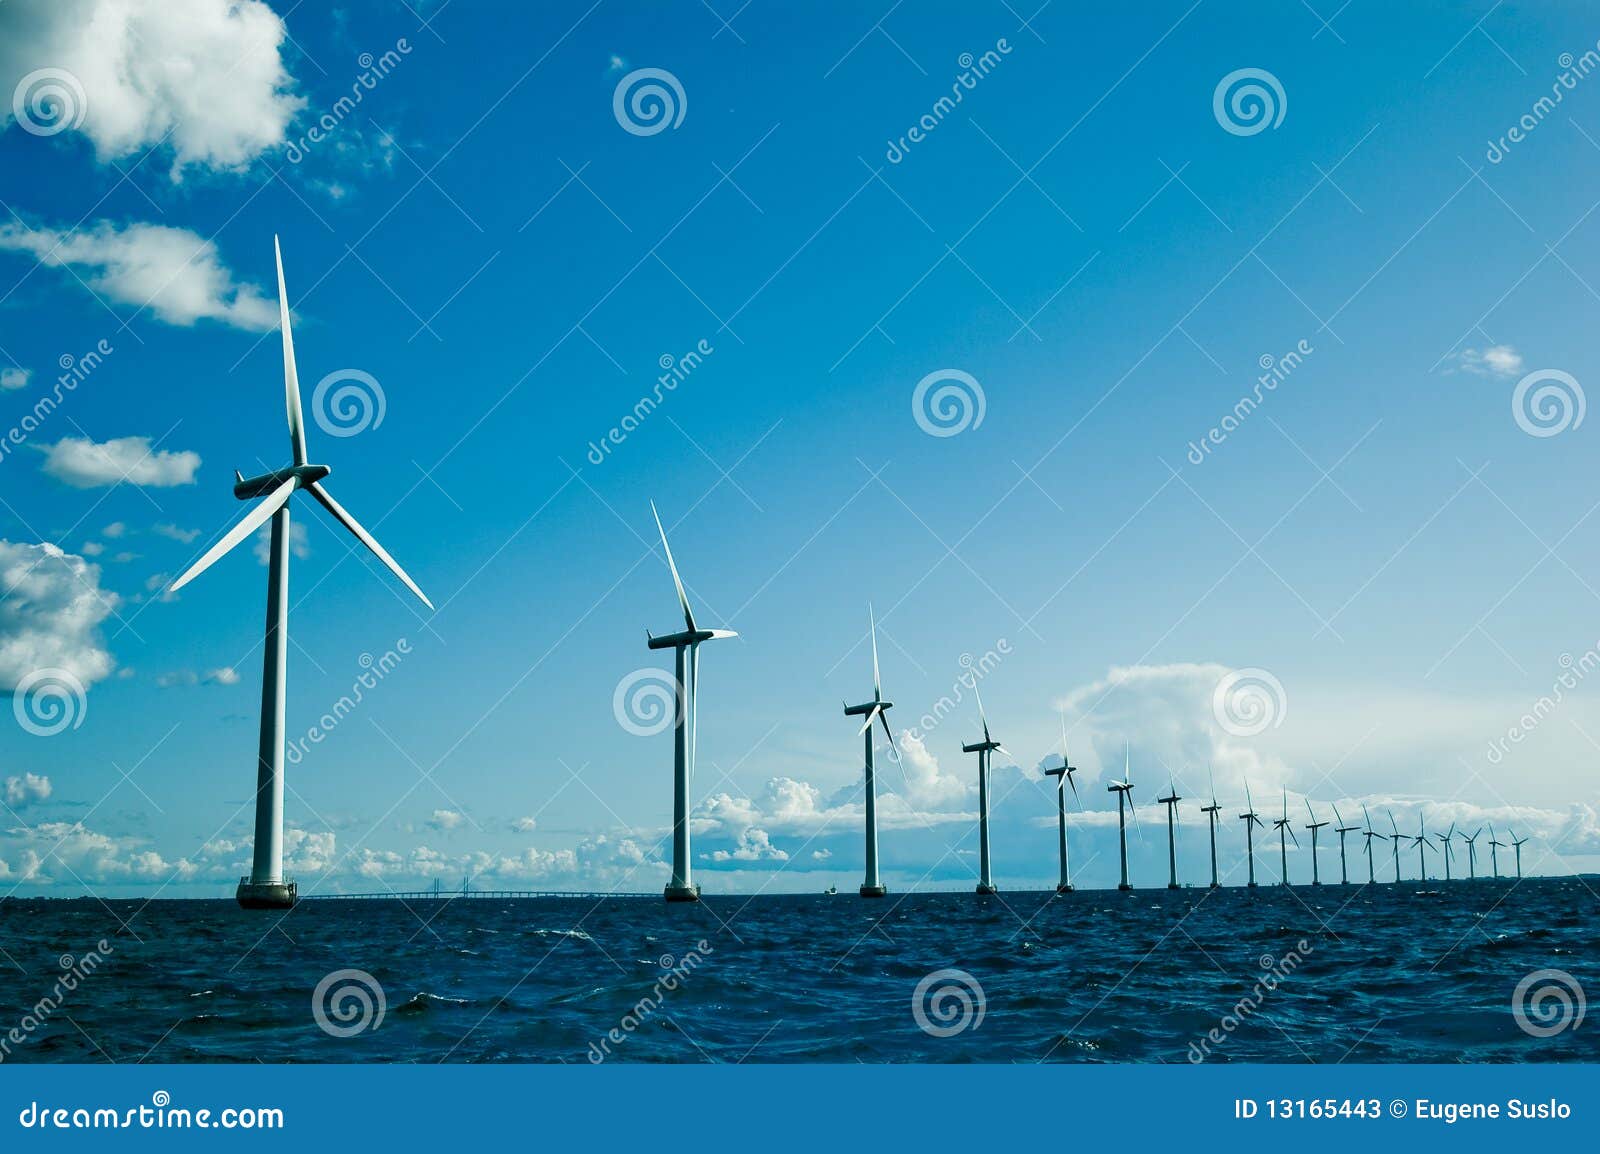 windmills further, horizontal